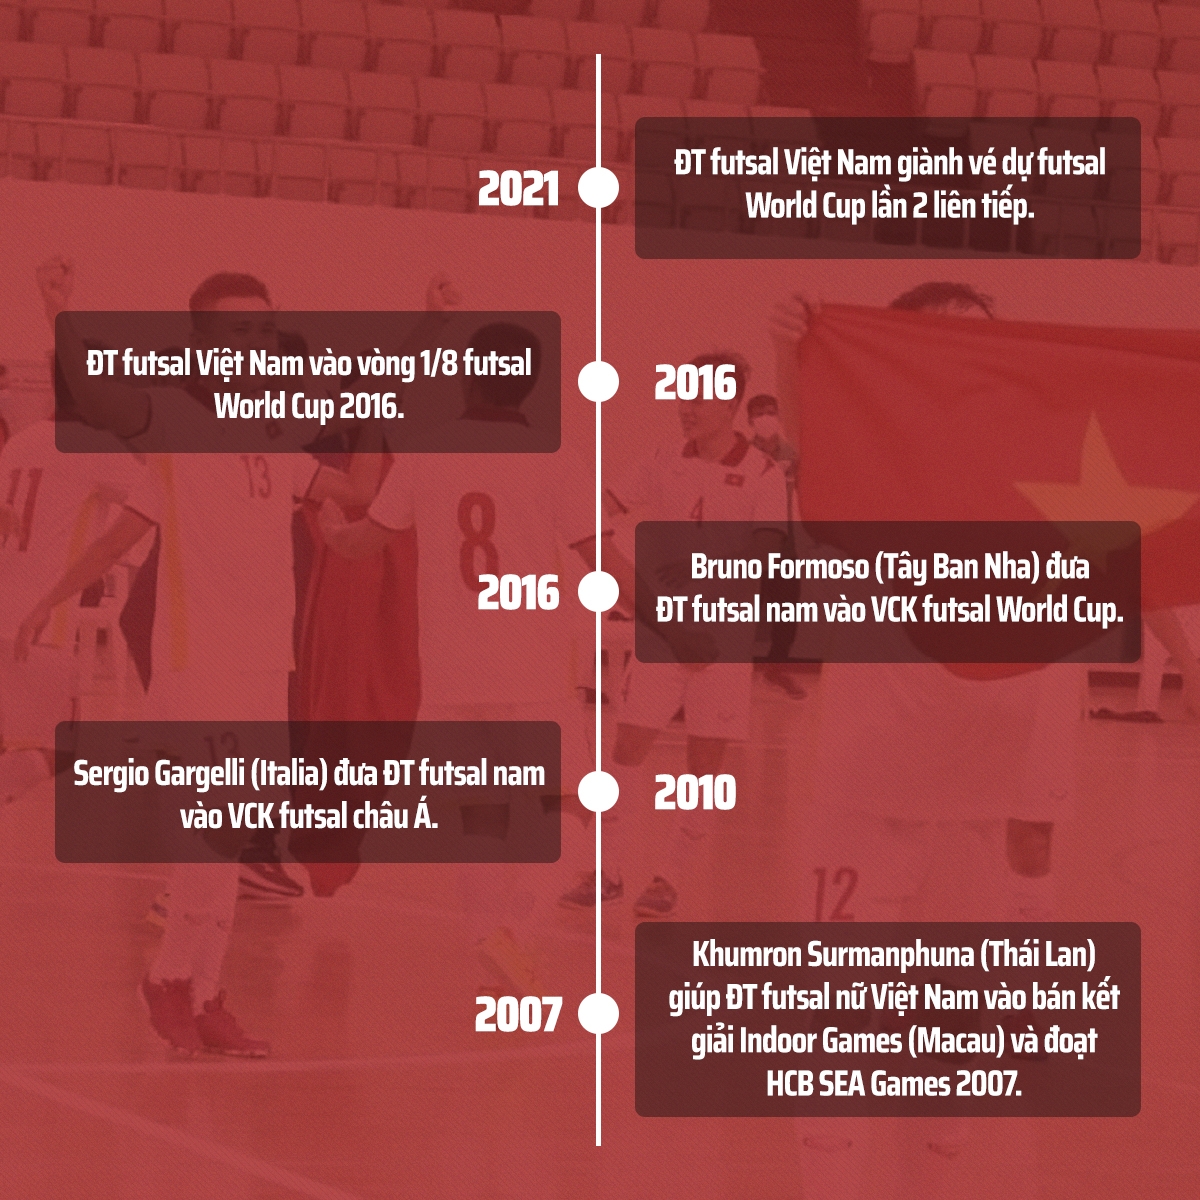 Futsal Việt Nam, chiến tích World Cup và thành công trong 'thị trường ngách' 2